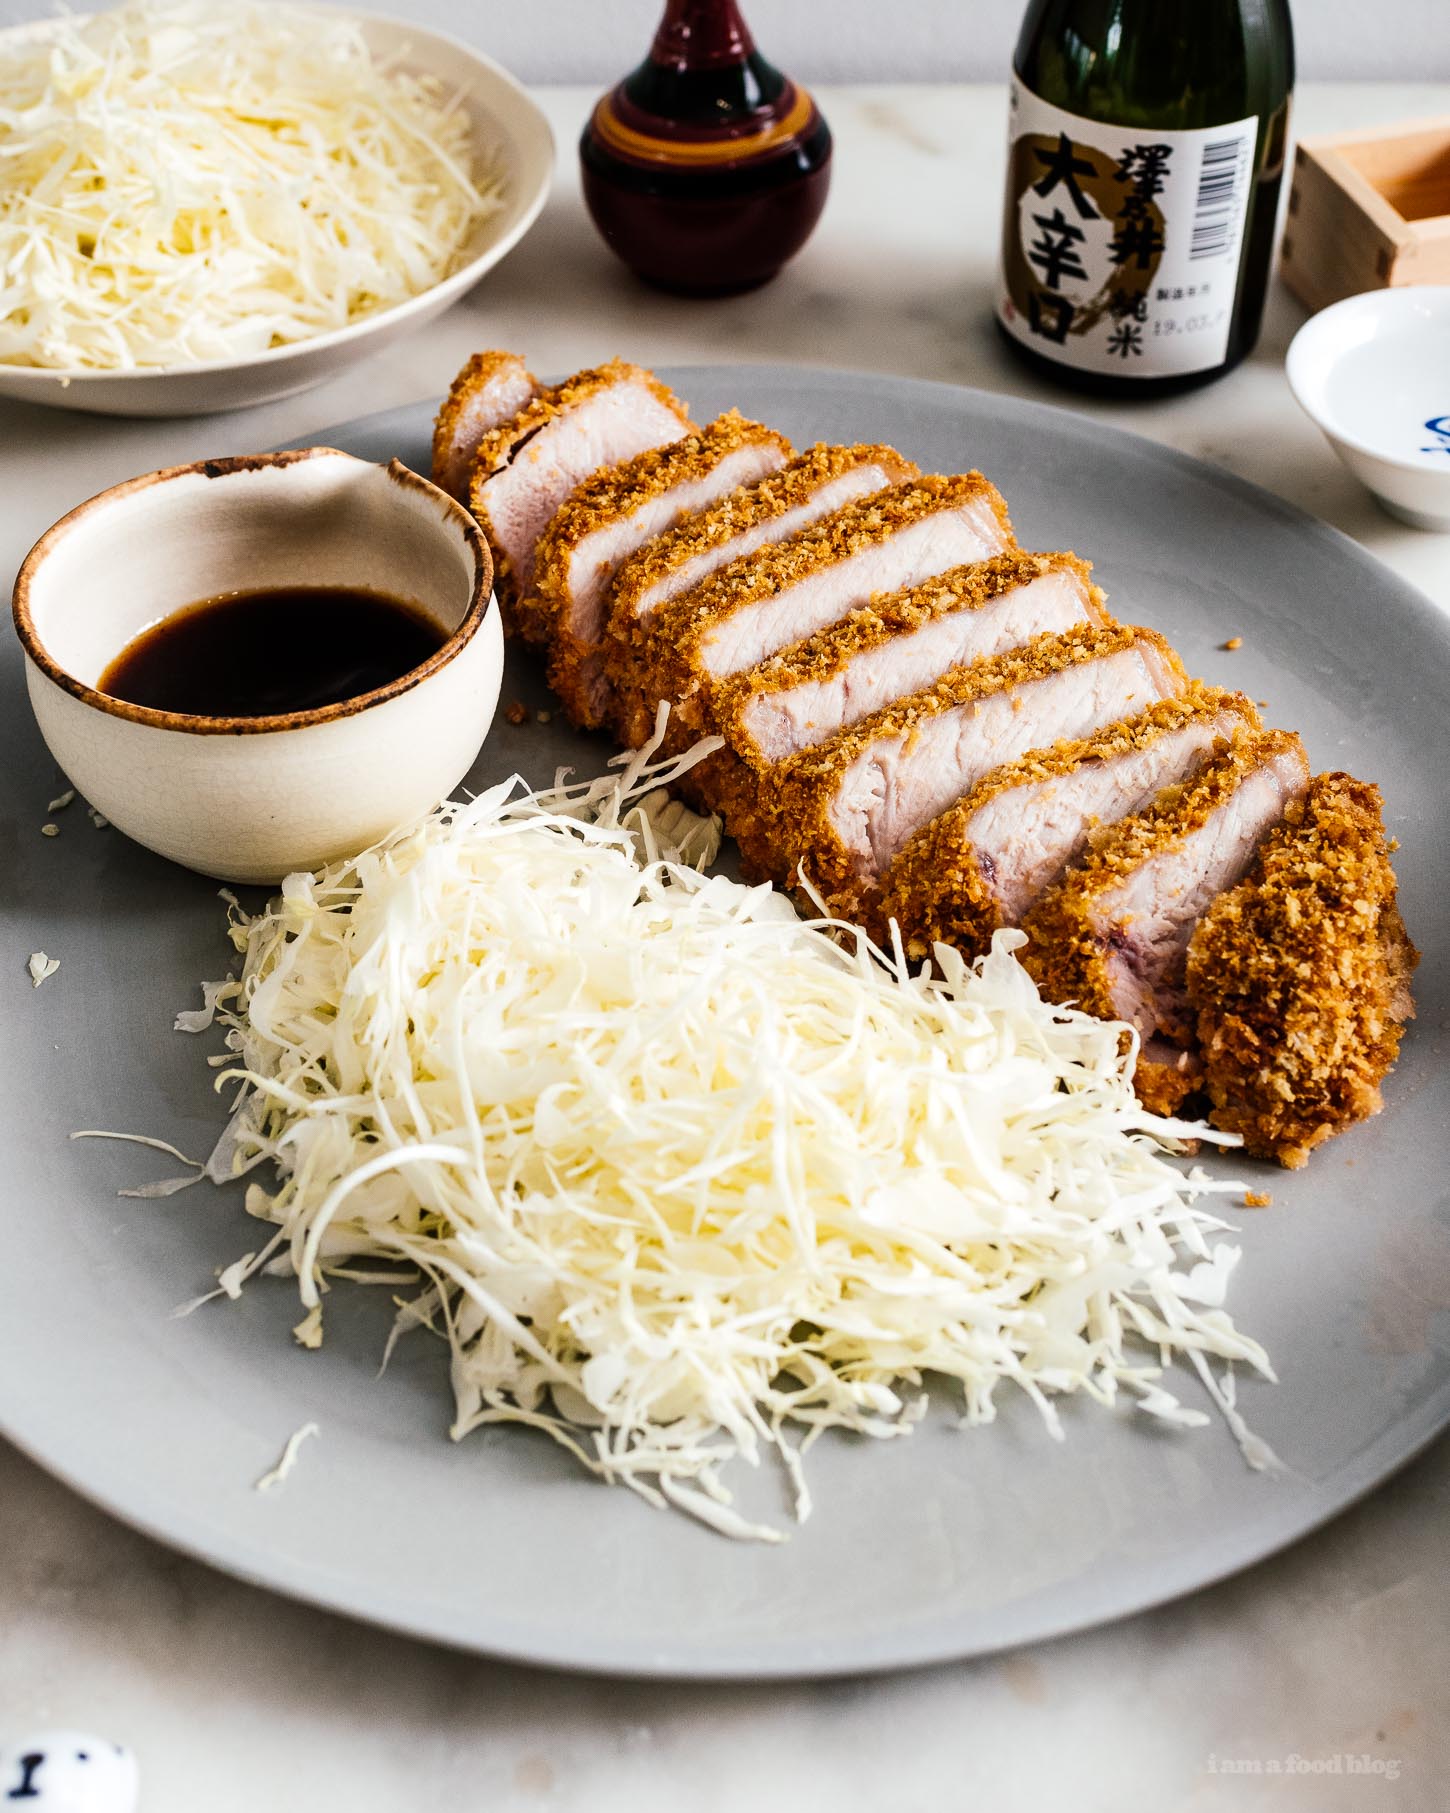 Tonkatsu de cerdo al horno fácil: una chuleta de cerdo extra gruesa y súper jugosa preparada al estilo tonkatsu, con panko ligero y crujiente, solo horneada en lugar de frita.  #comidajaponesa #japonesa #tonkatsu #chuleta de cerdo #cerdo #recetas #al horno #cena #cenafacil